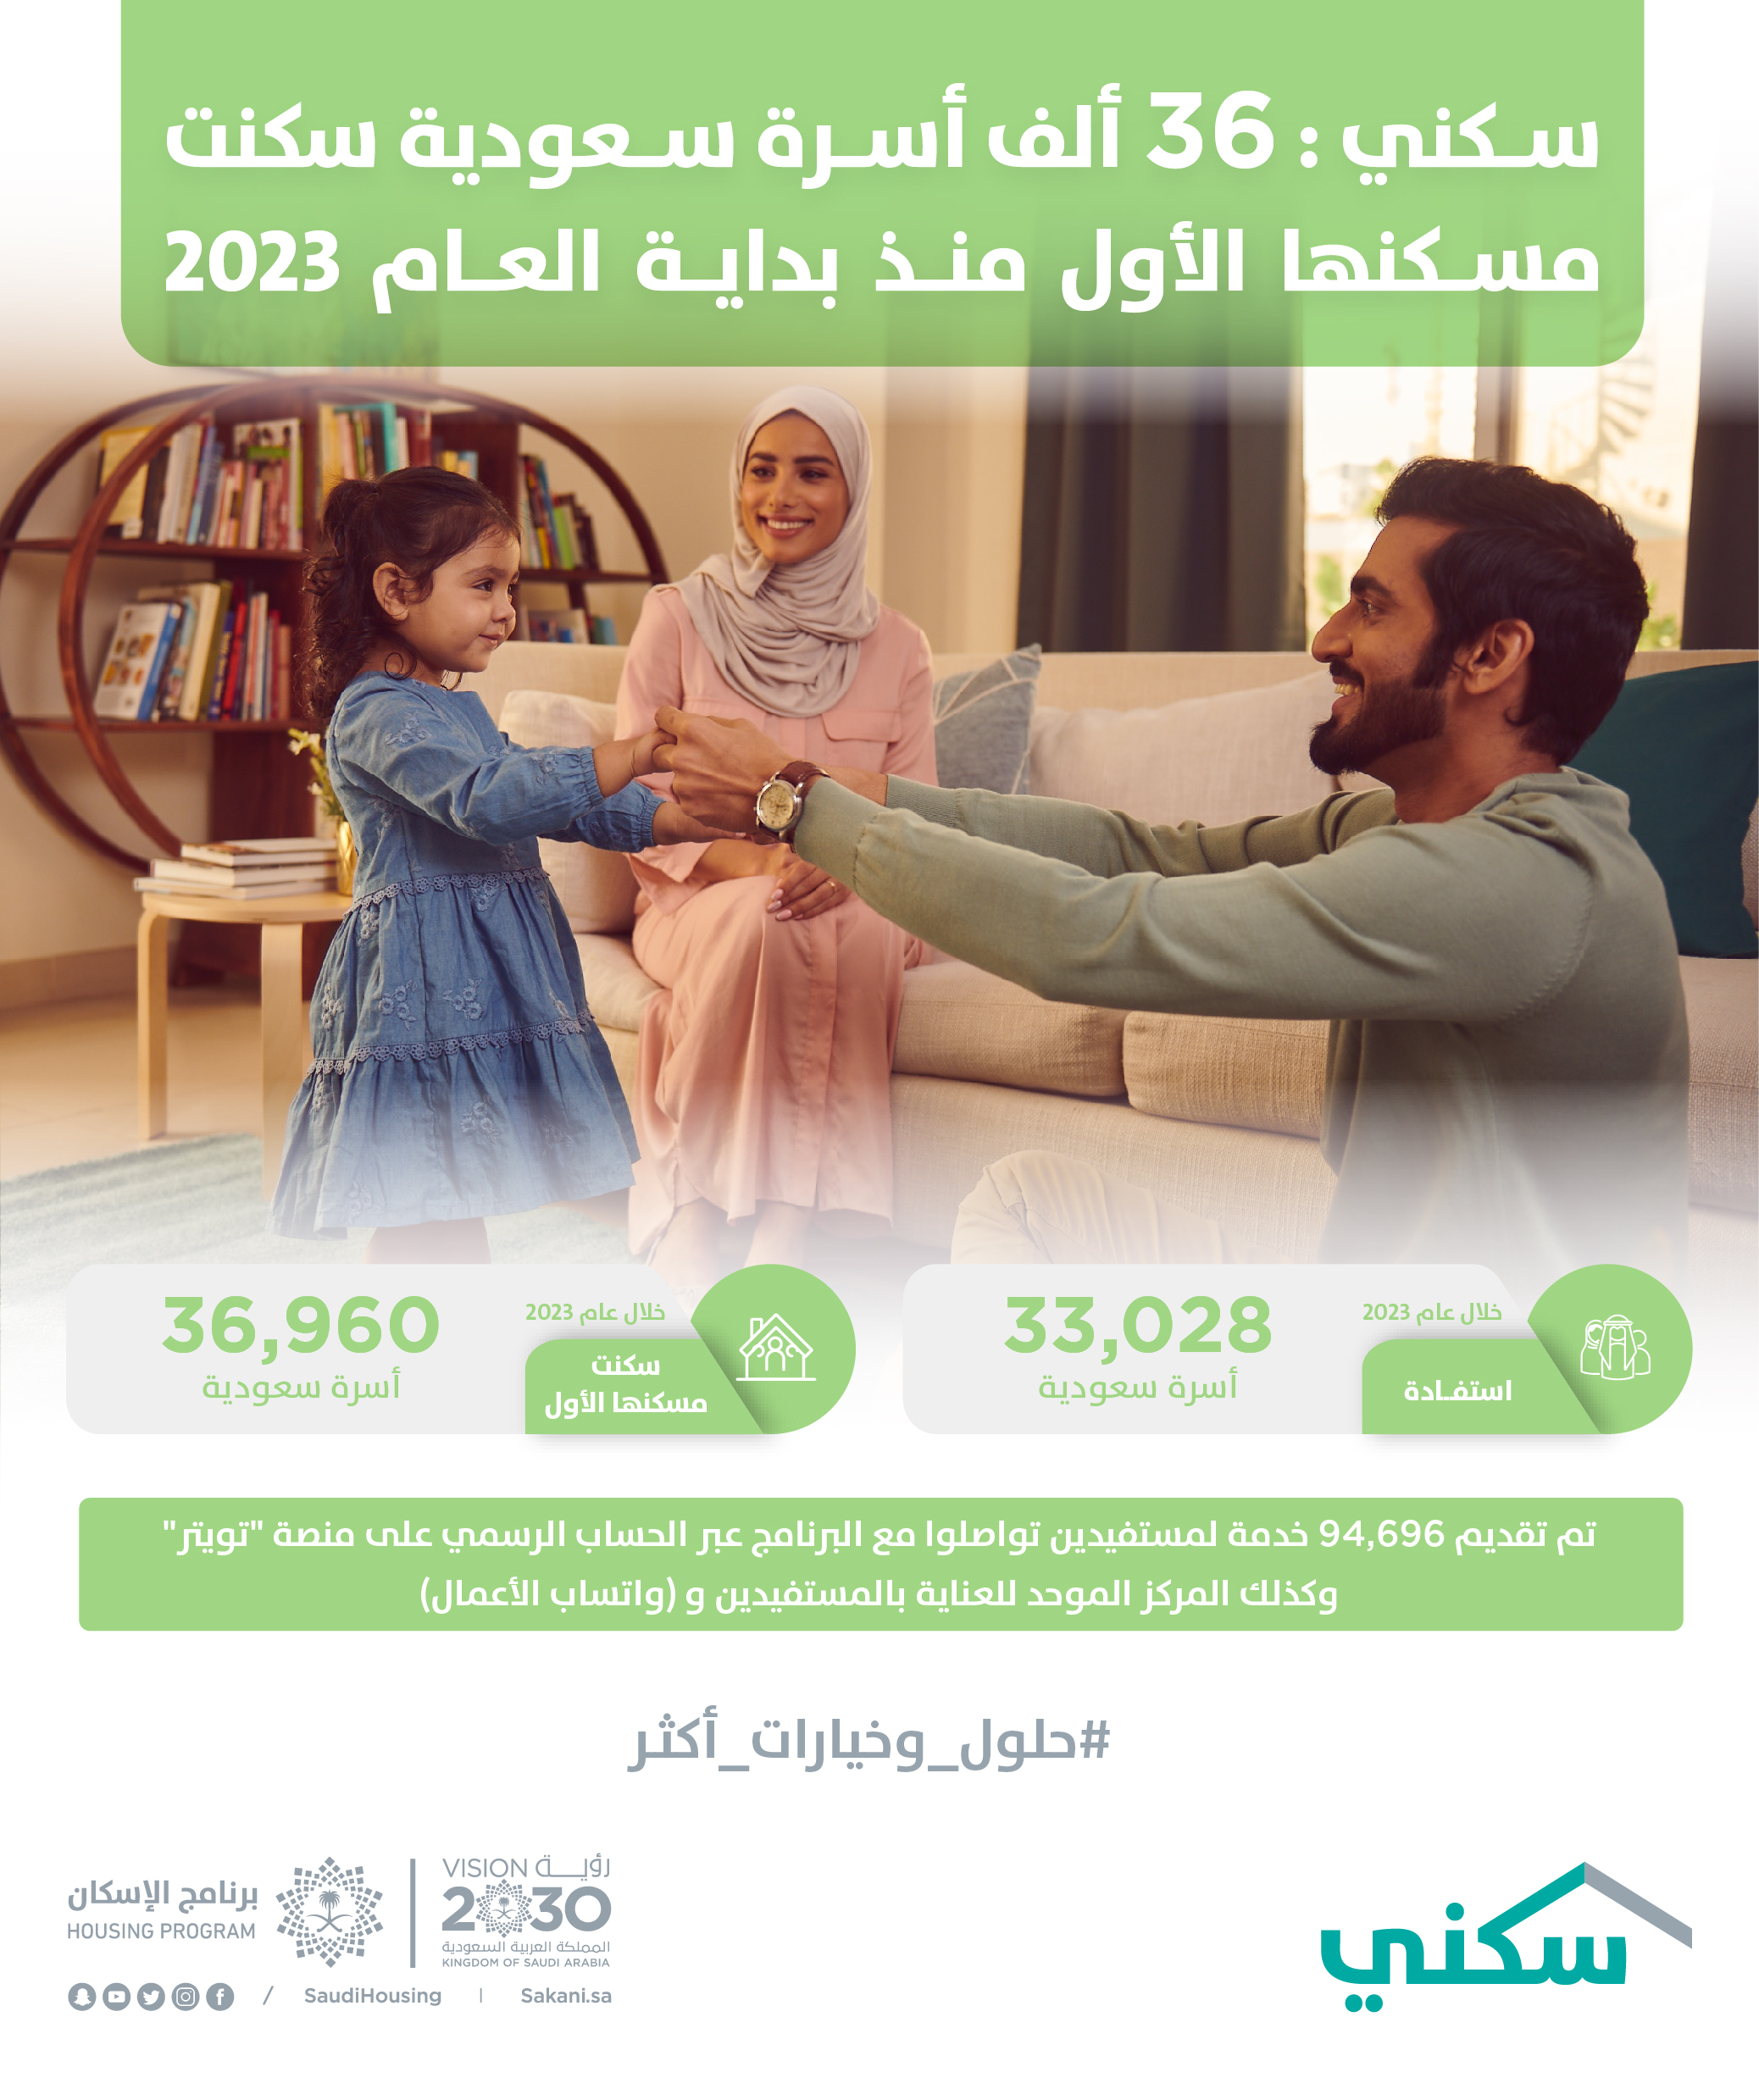 "سكني": 36 ألف أسرة سعودية سكنت مسكنها الأول منذ بداية العام 2023